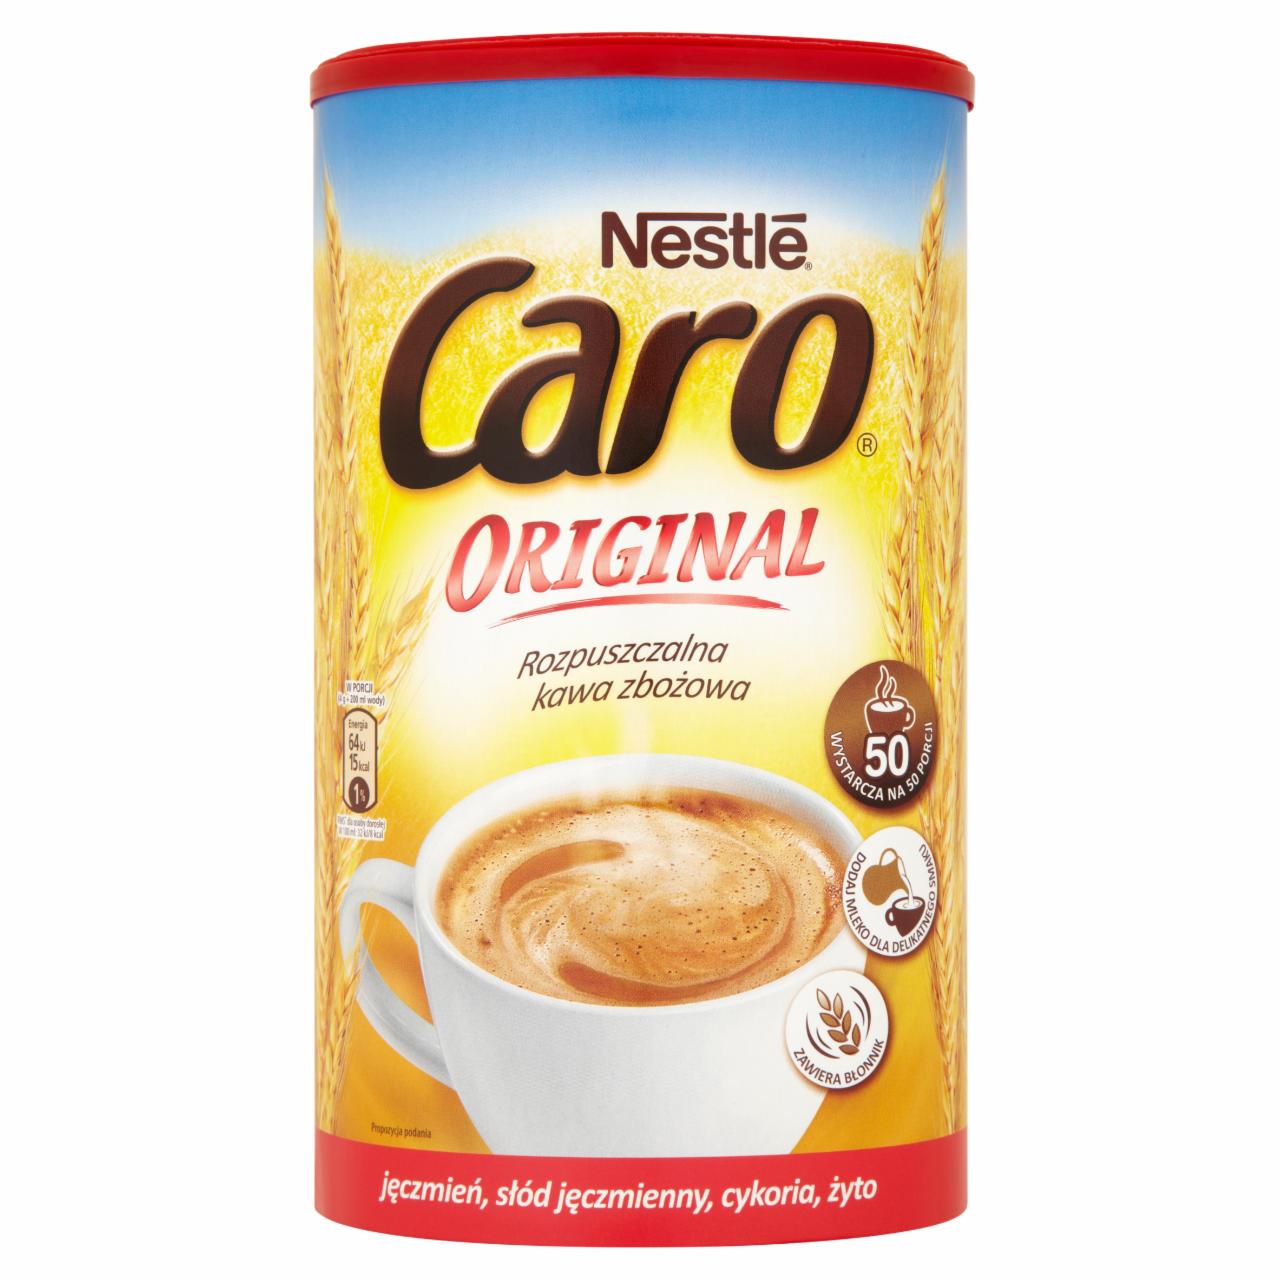 Фото - кофейный напиток Caro original Nestle